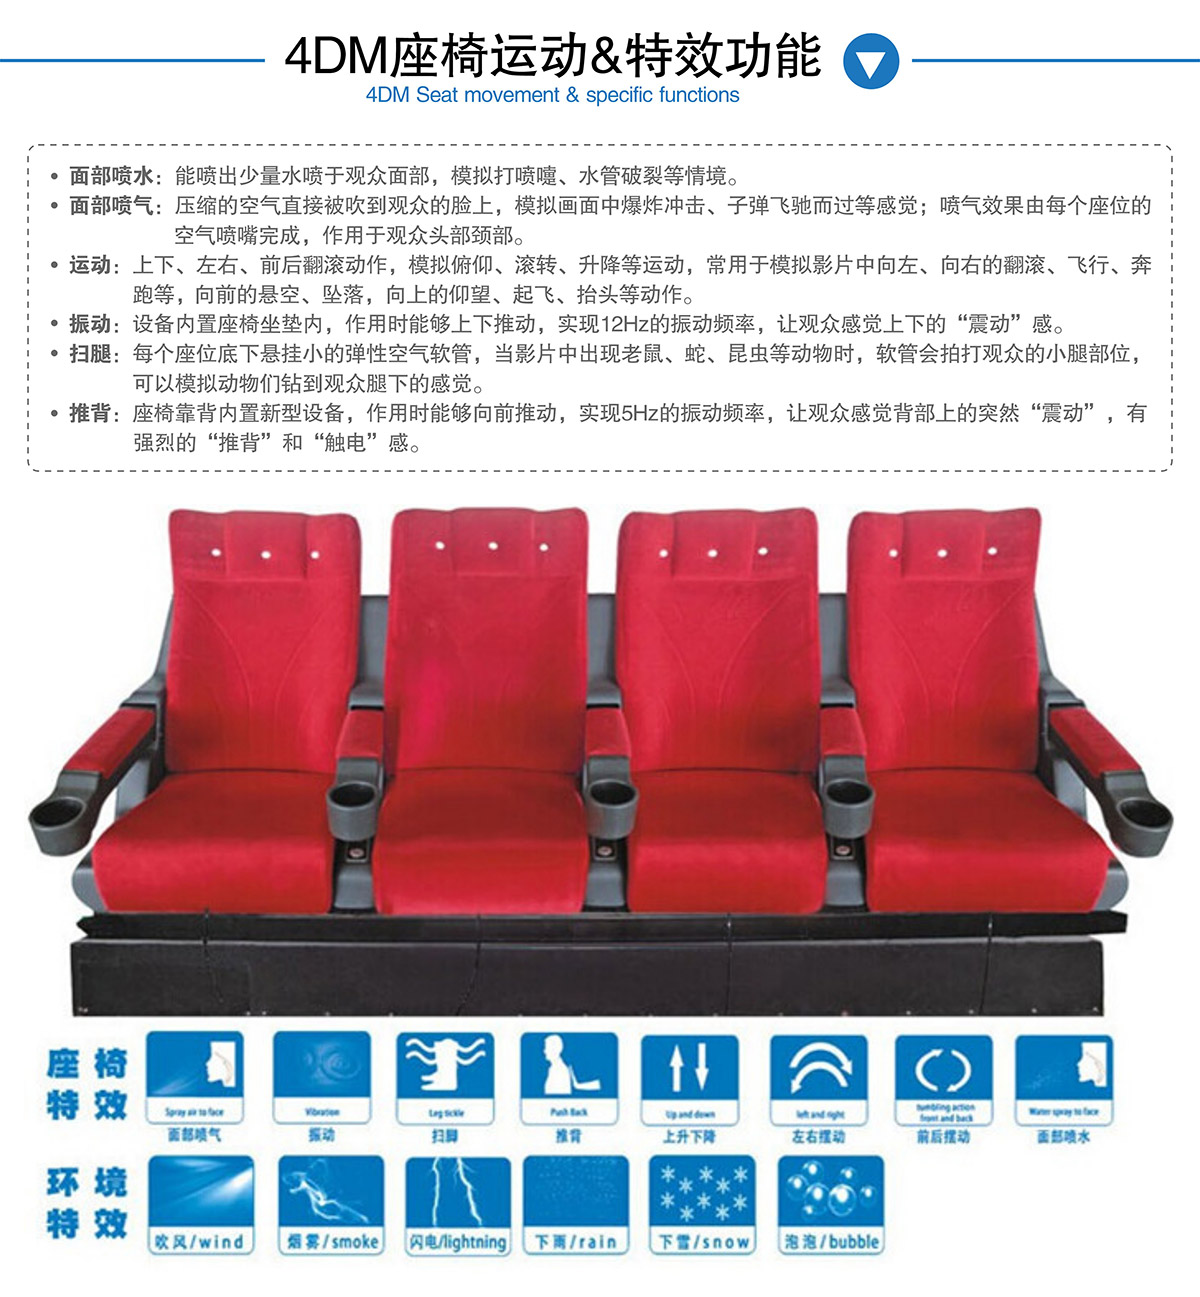 动感影院4DM座椅运动和特效功能.jpg